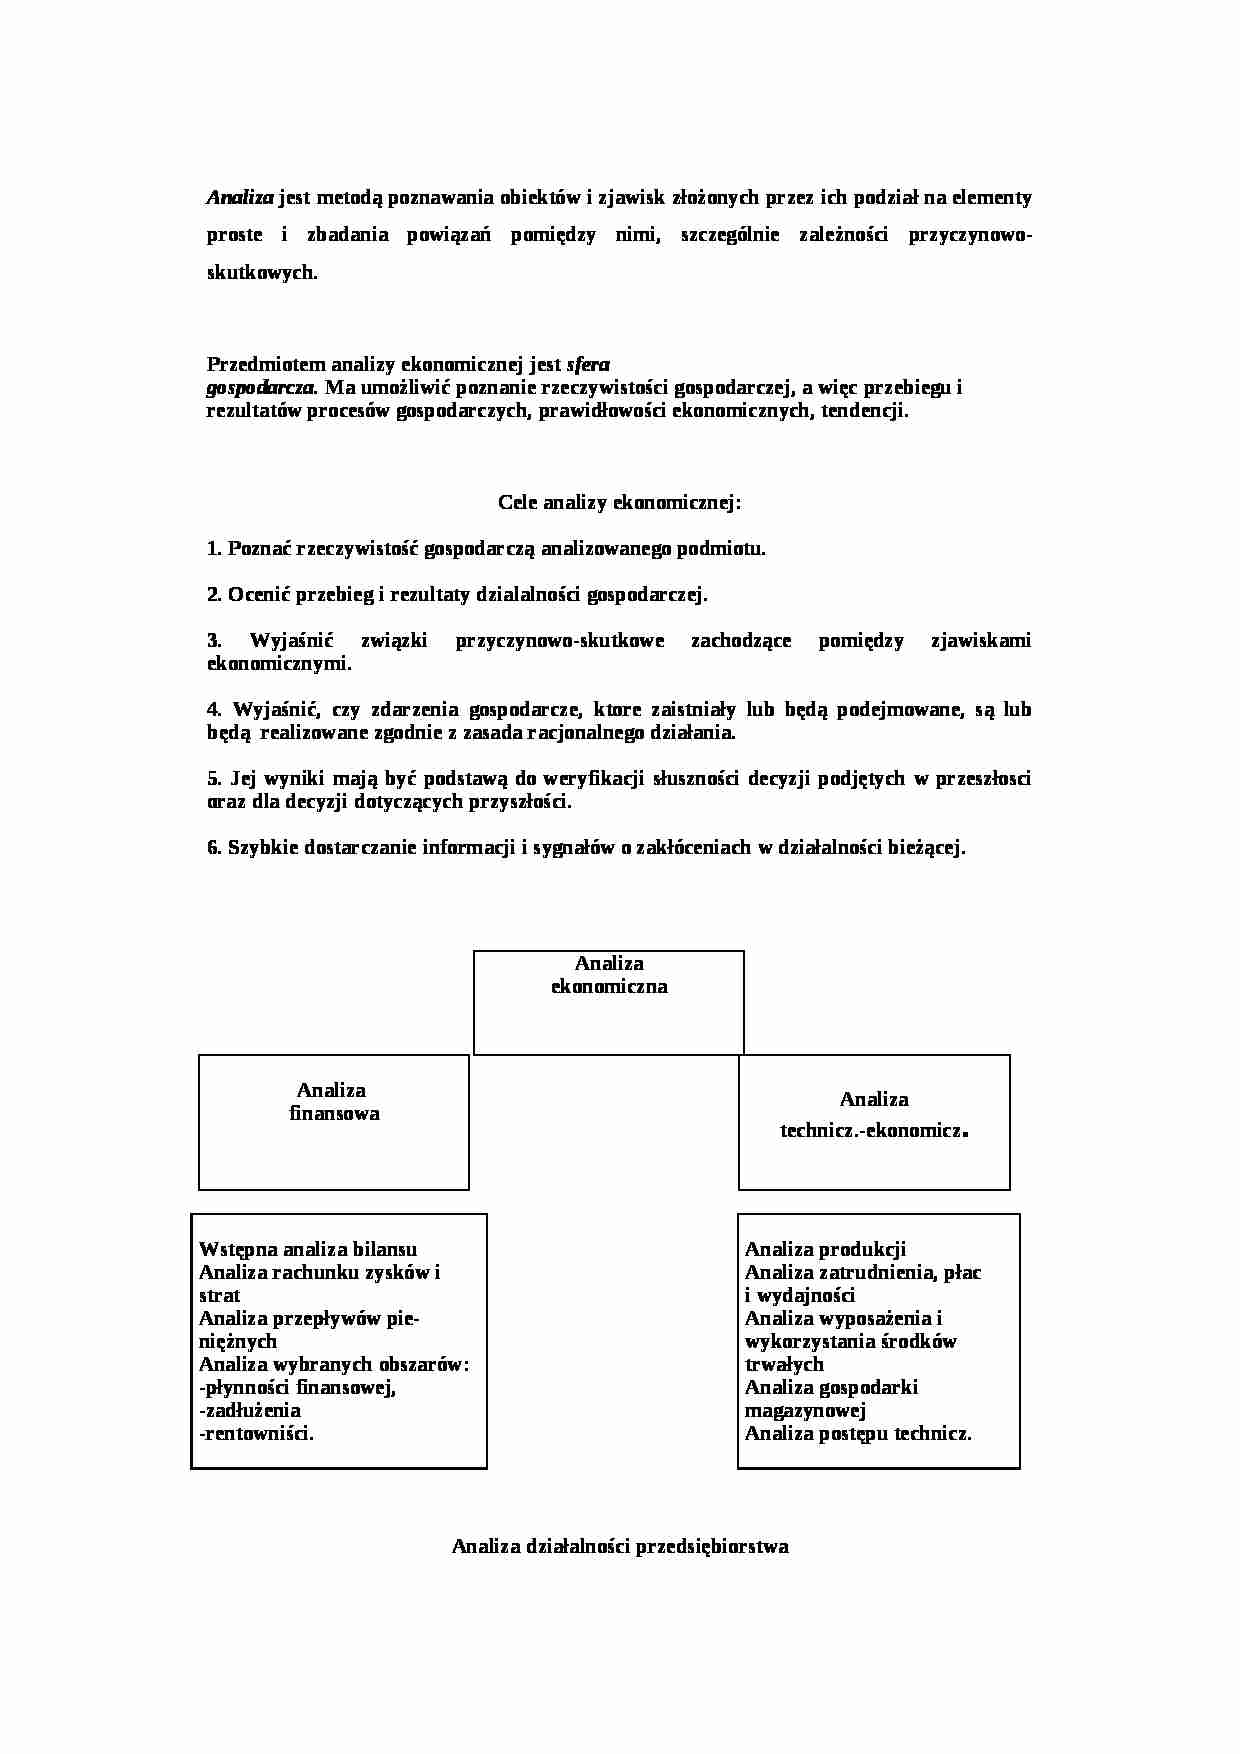 ANALIZA FINANSOWA - Analiza działalności przedsiębiorstwa - strona 1